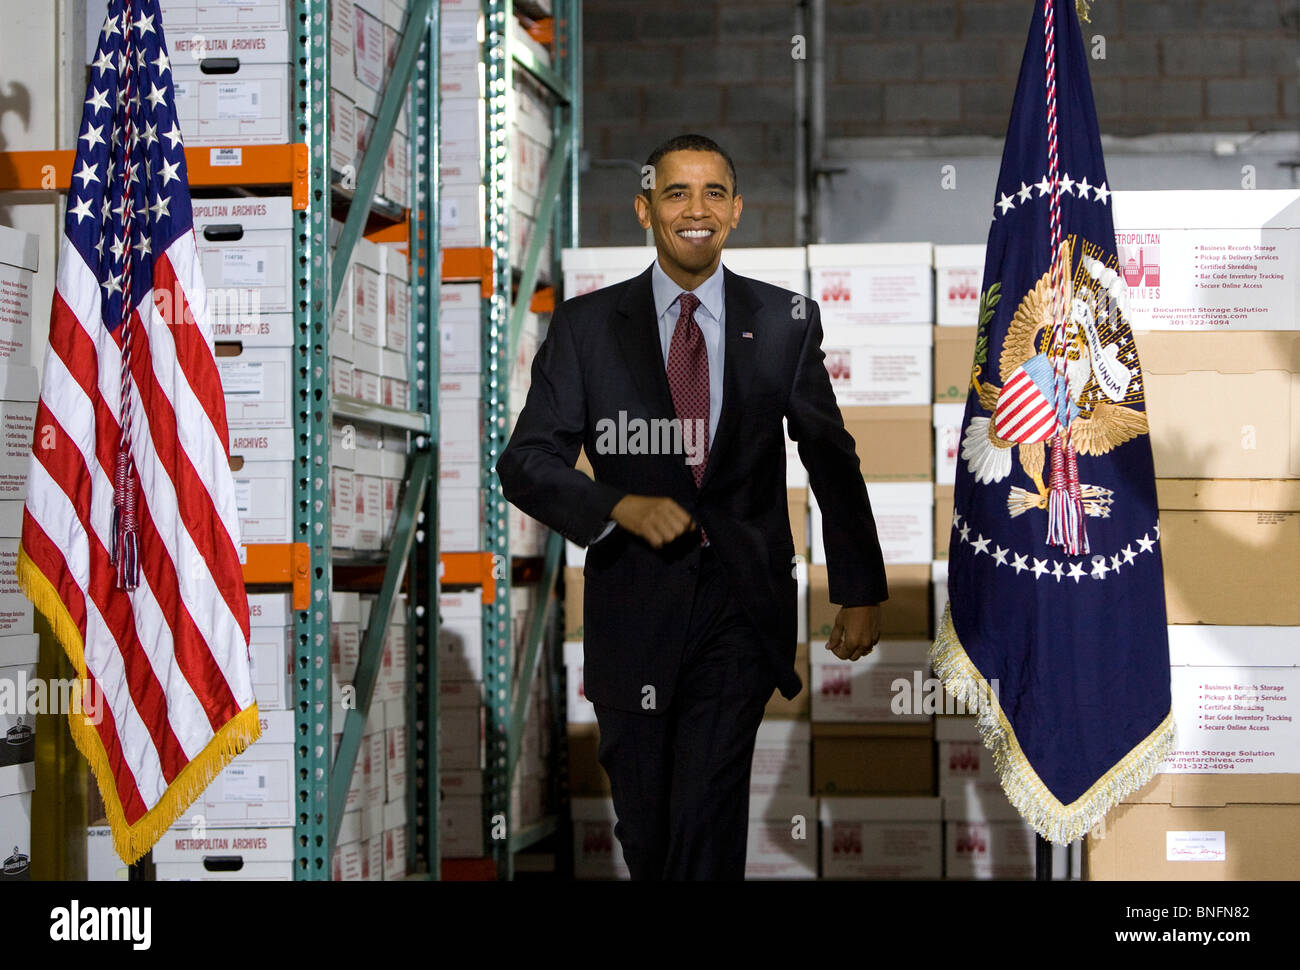 Präsident Barack Obama spricht in einer Lagerhalle für kleine Unternehmen zu fördern. Stockfoto